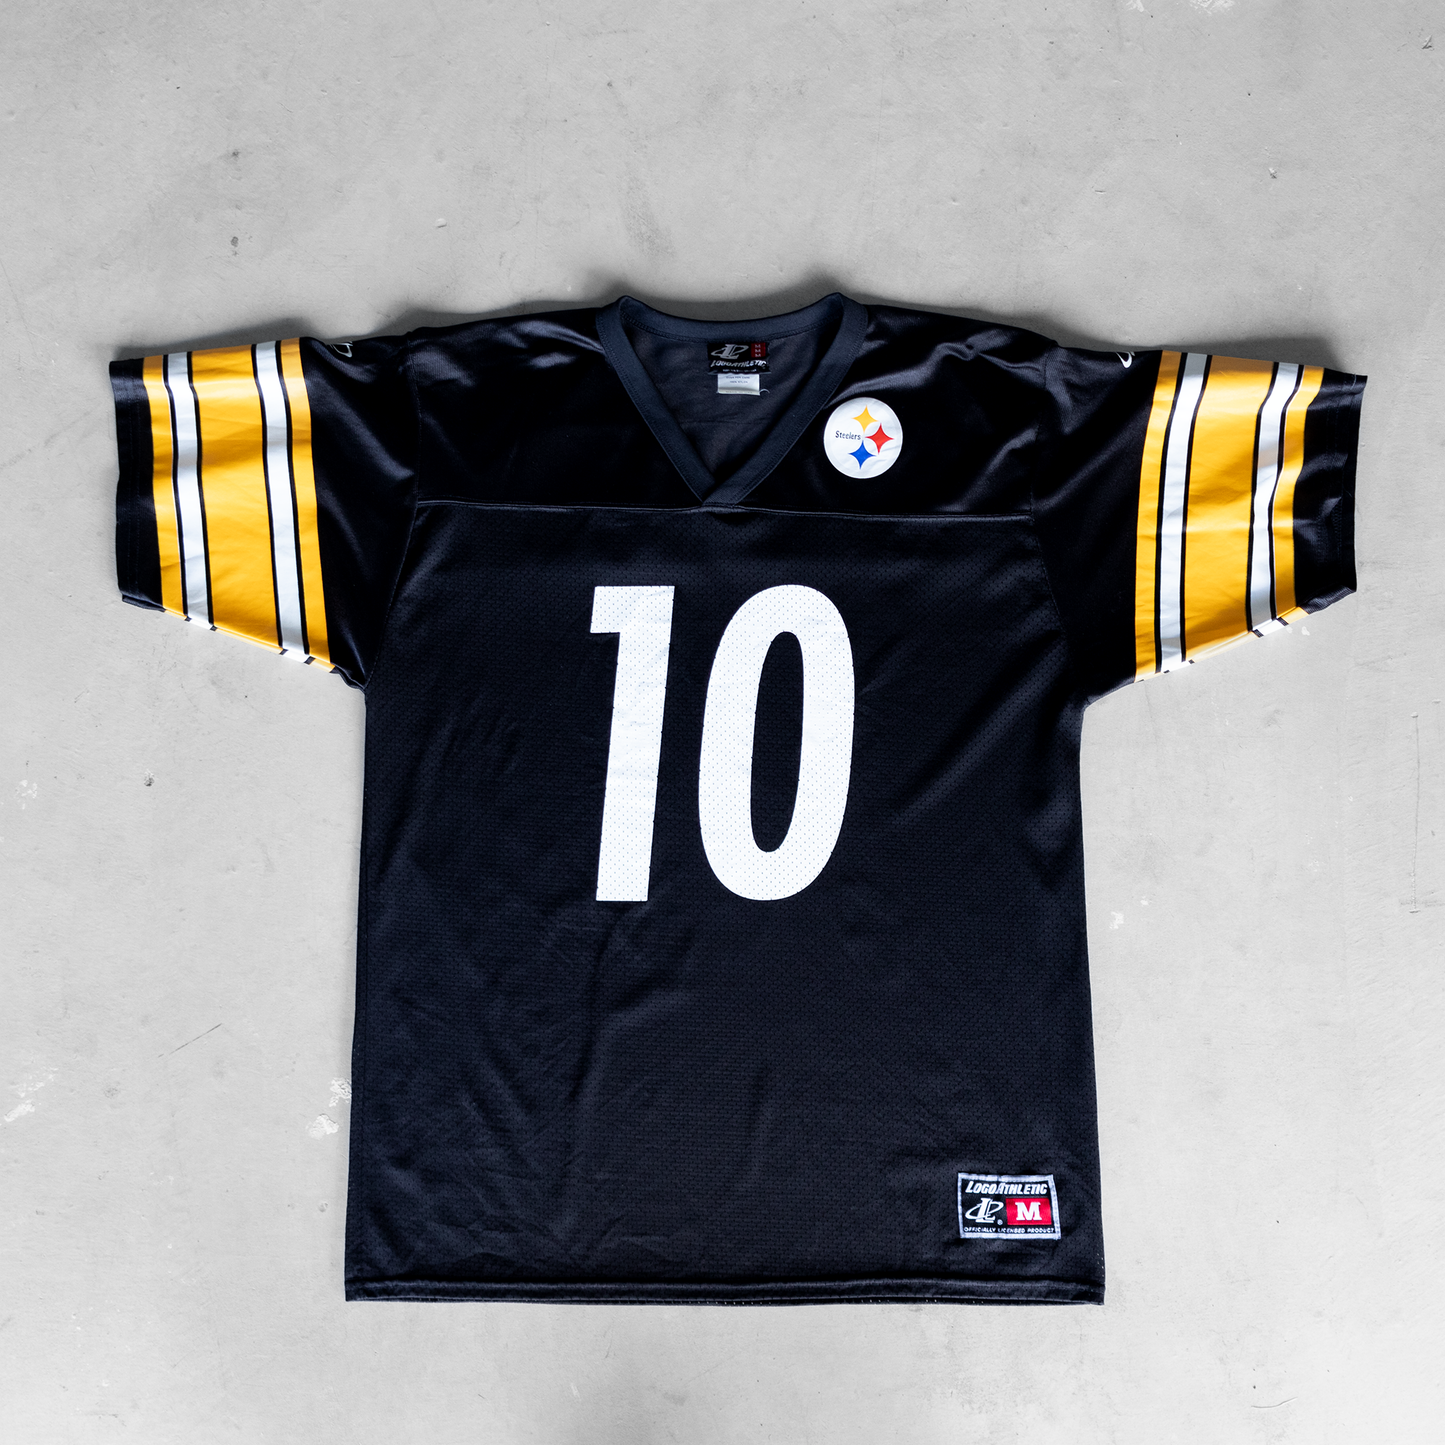 Vintage NFL Pittsburg Steelers Kordell Stewart #10 Football Jersey (M)